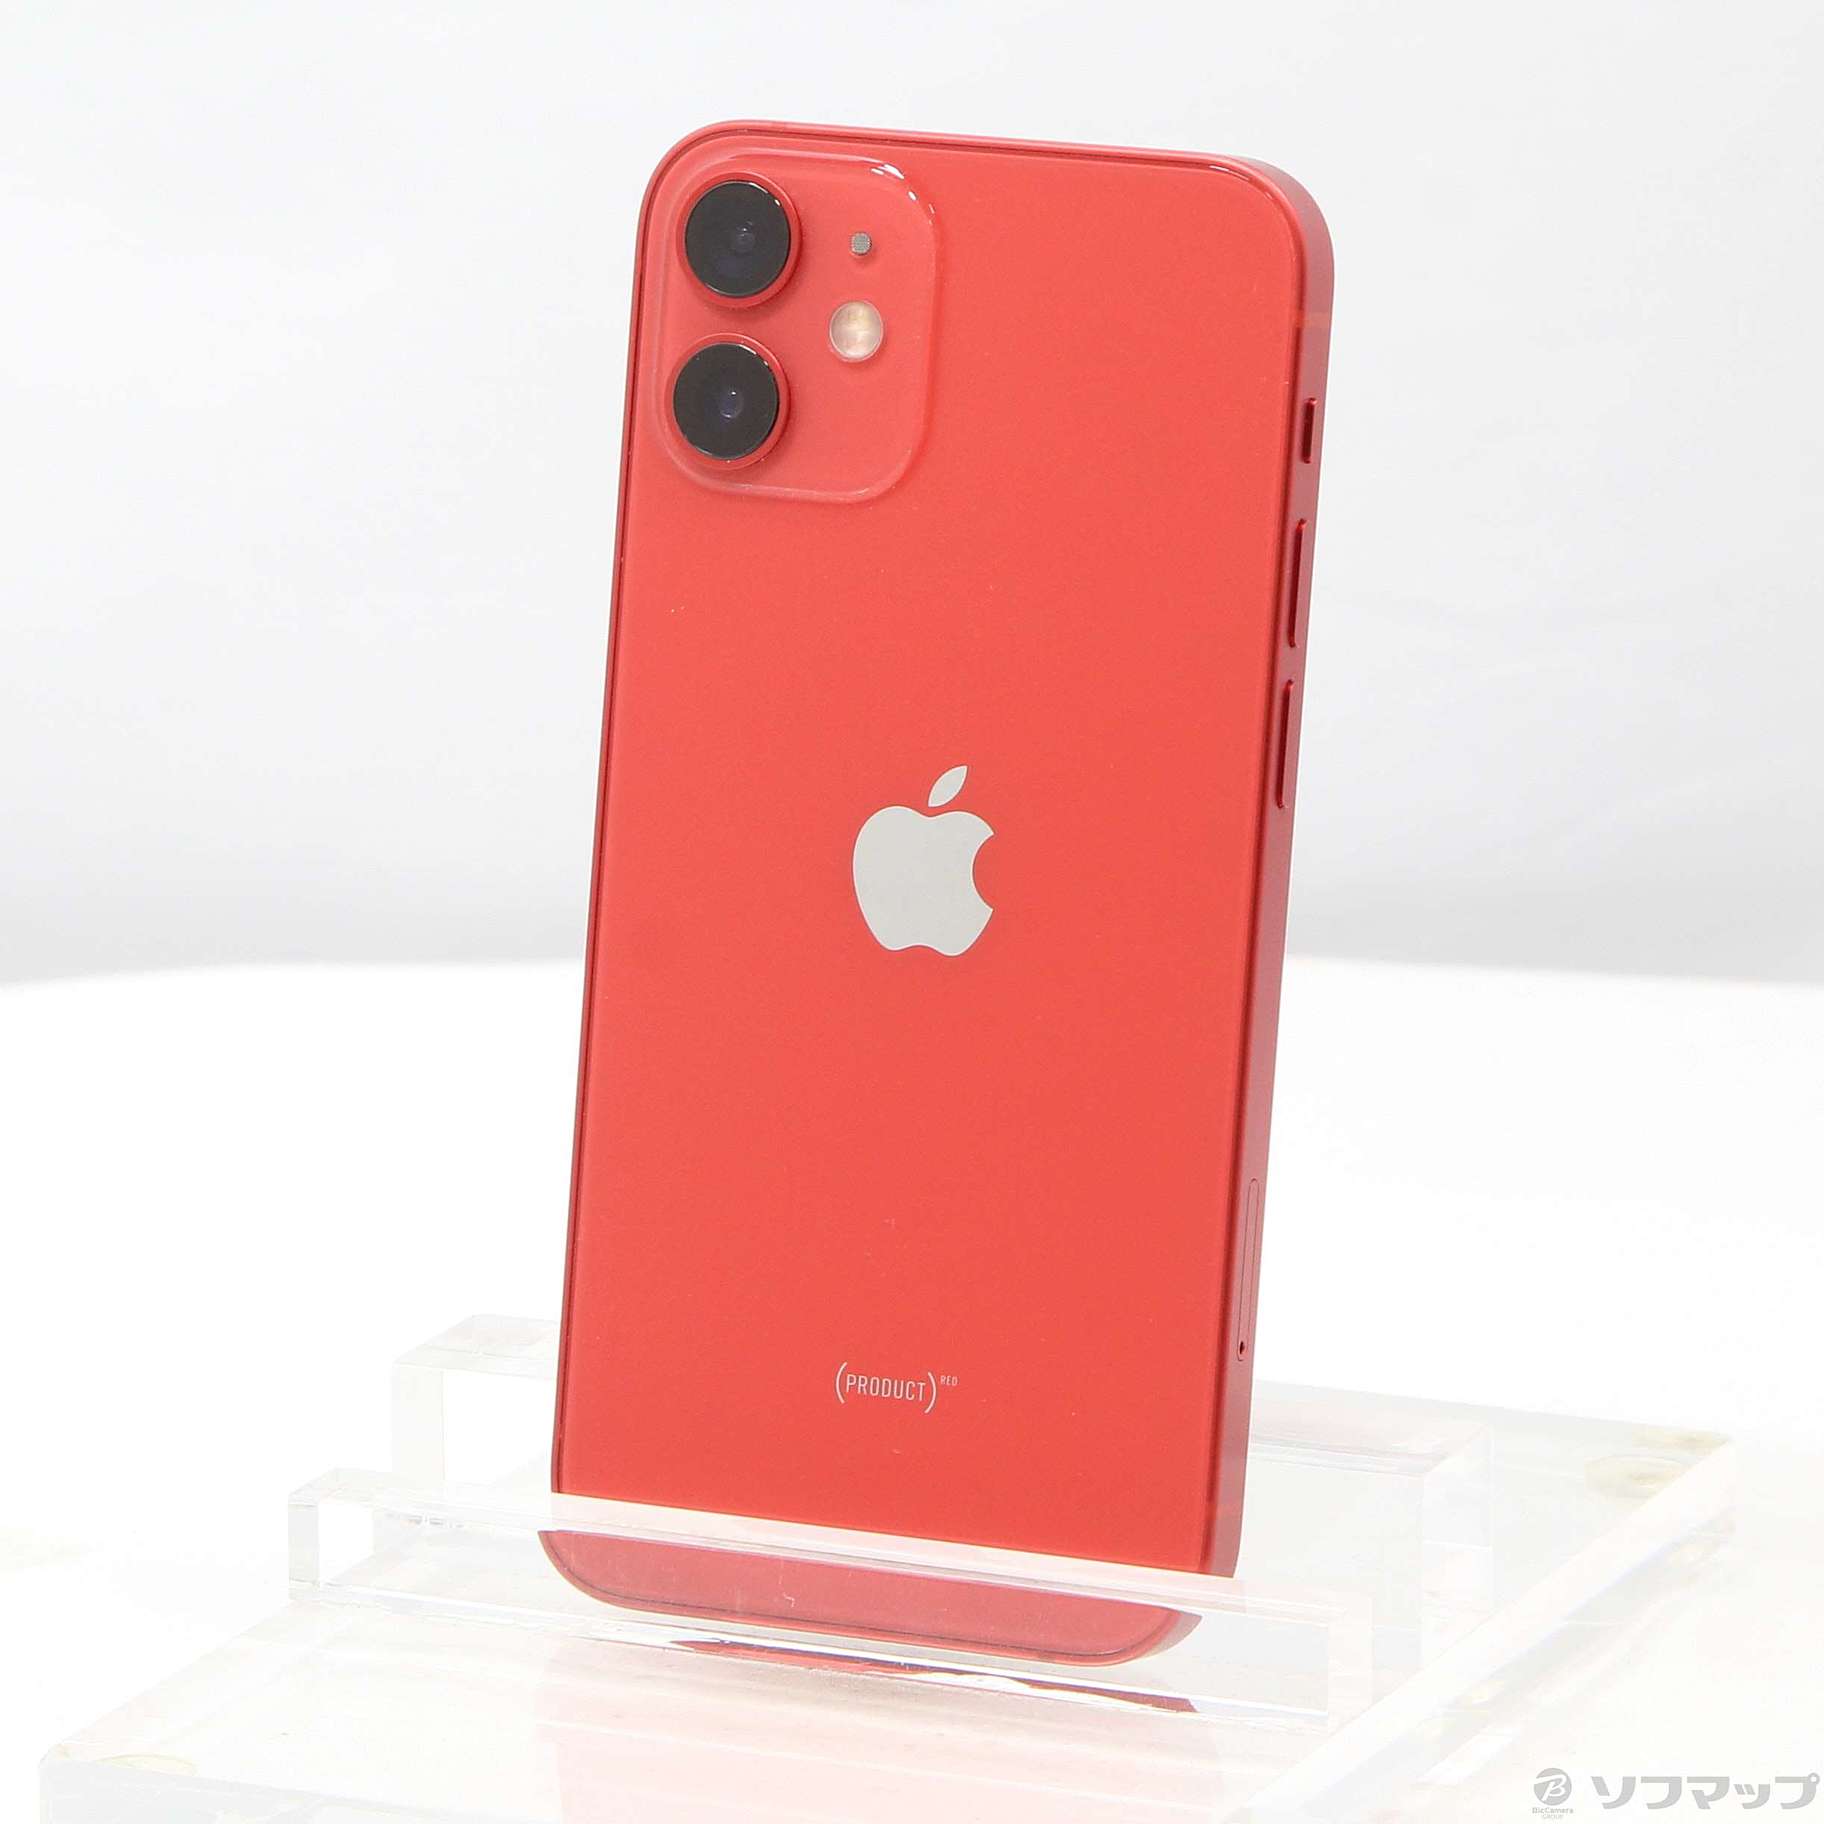 iPhone 12mini 128GB PRODUCT RED - www.sorbillomenu.com